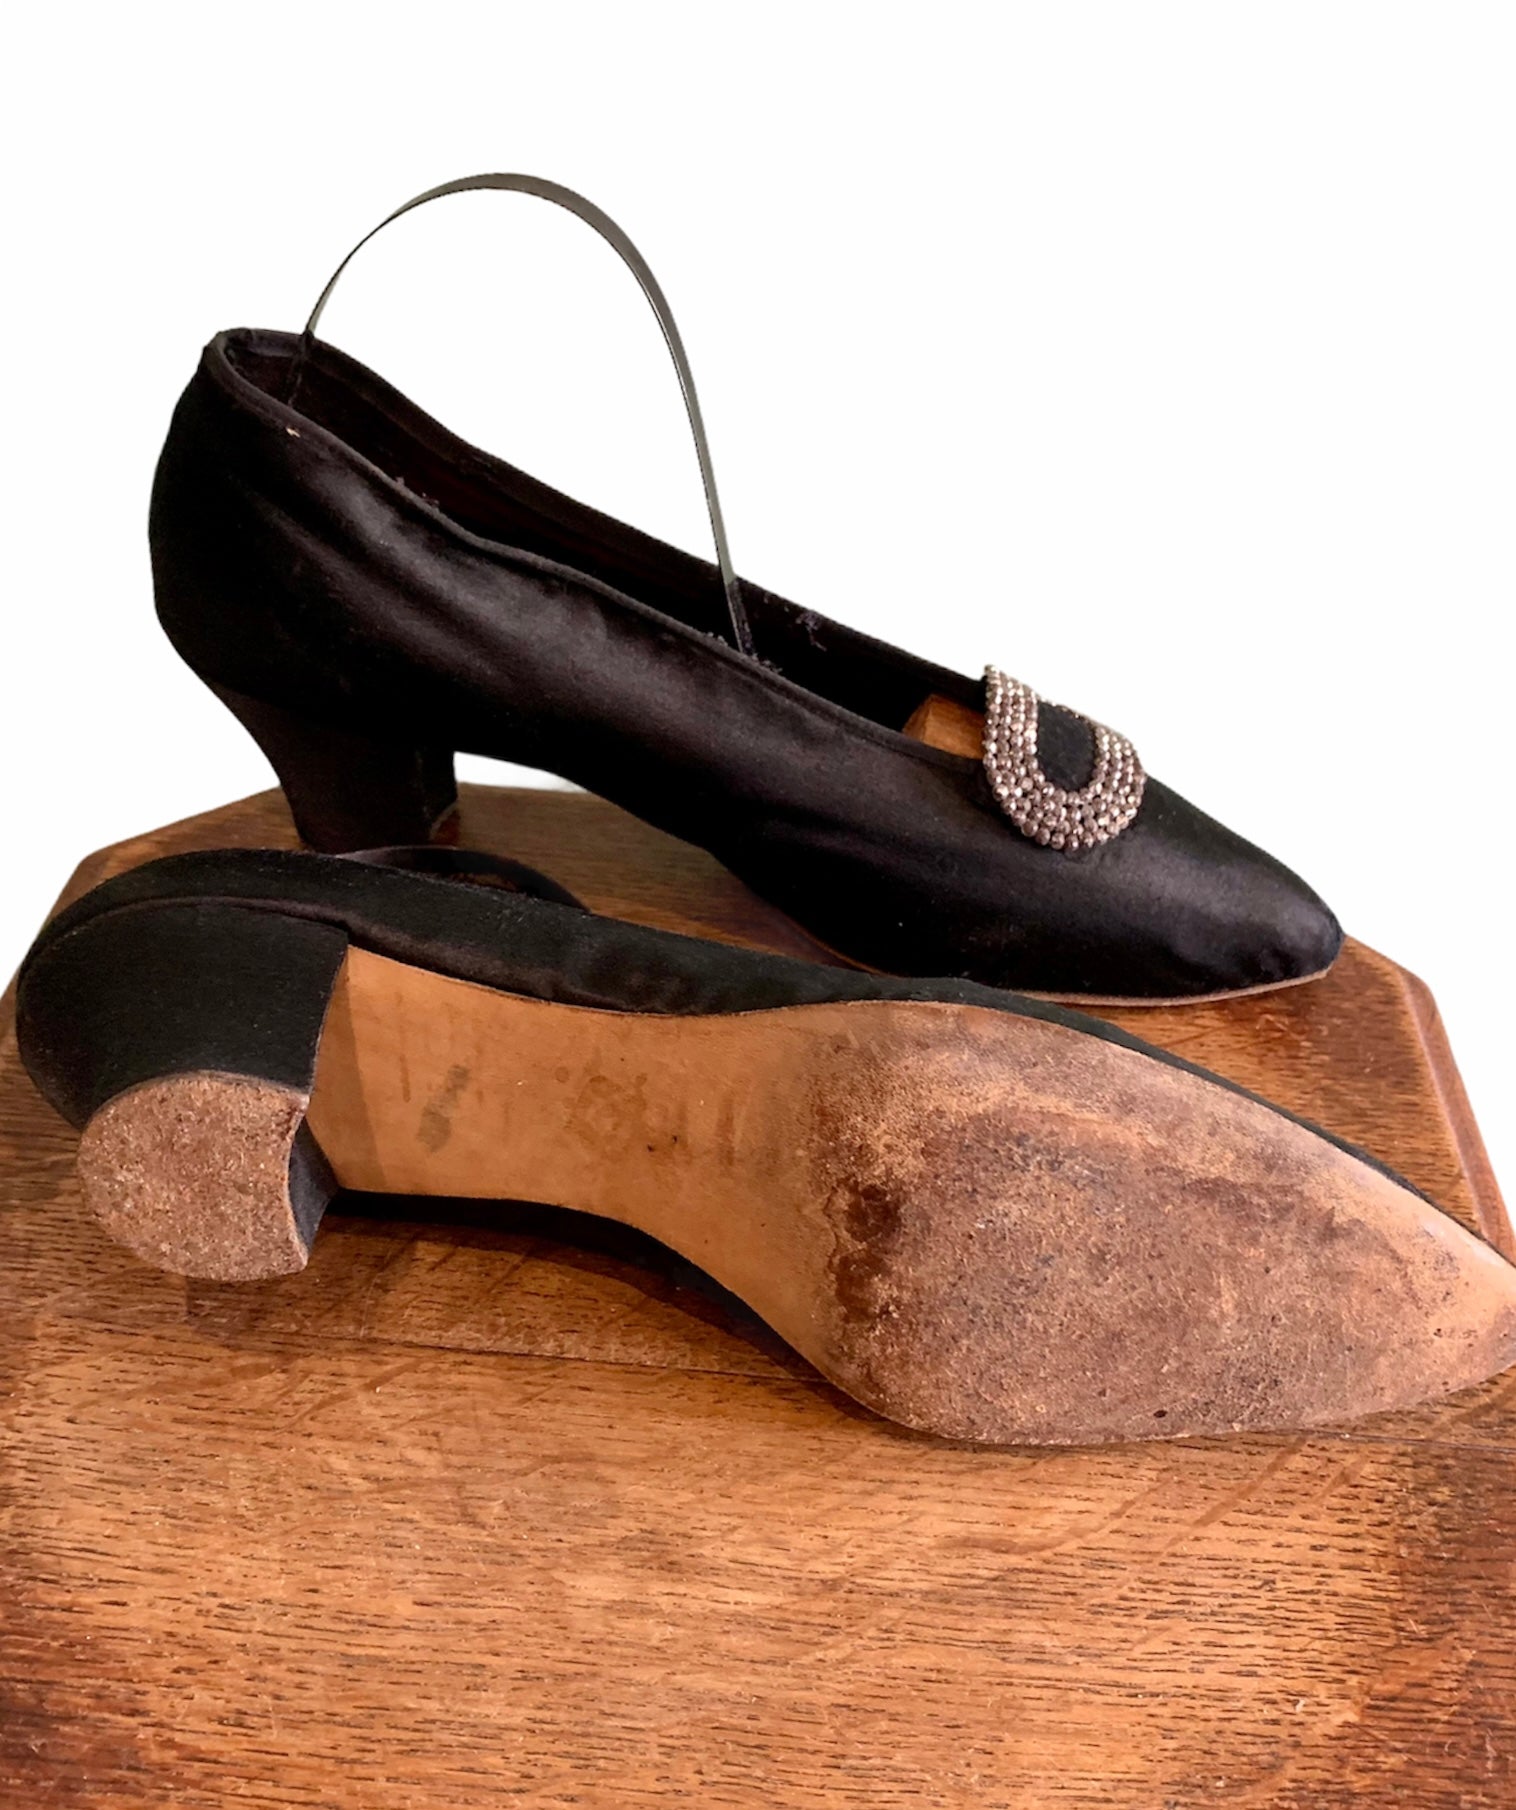 Chaussures années 20 - Mode des années 20